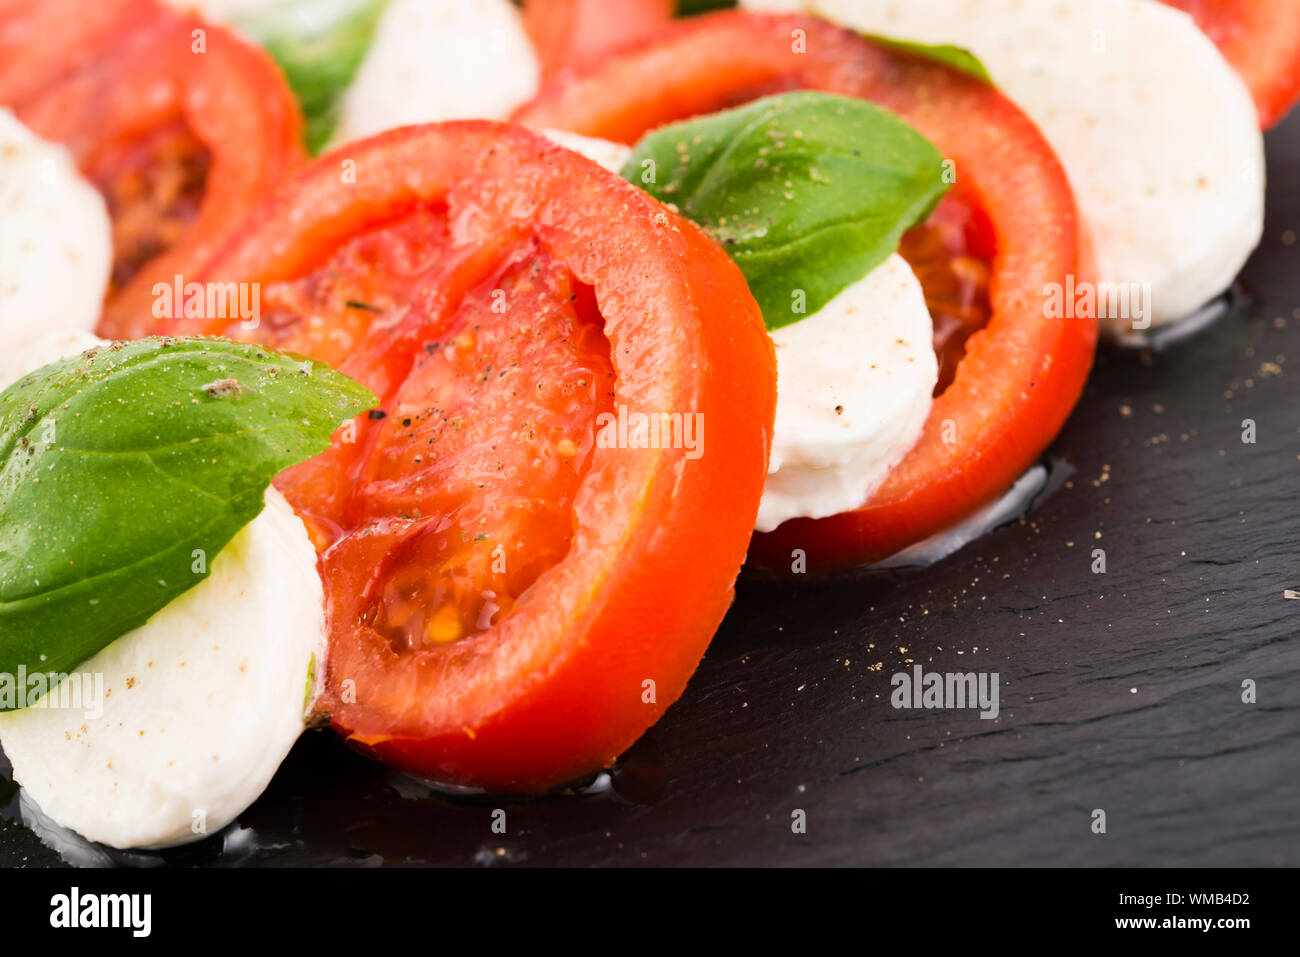 Insalata caprese con mozzarella, pomodoro, basilico e aceto balsamico e disposti sulla piastra nera Foto Stock